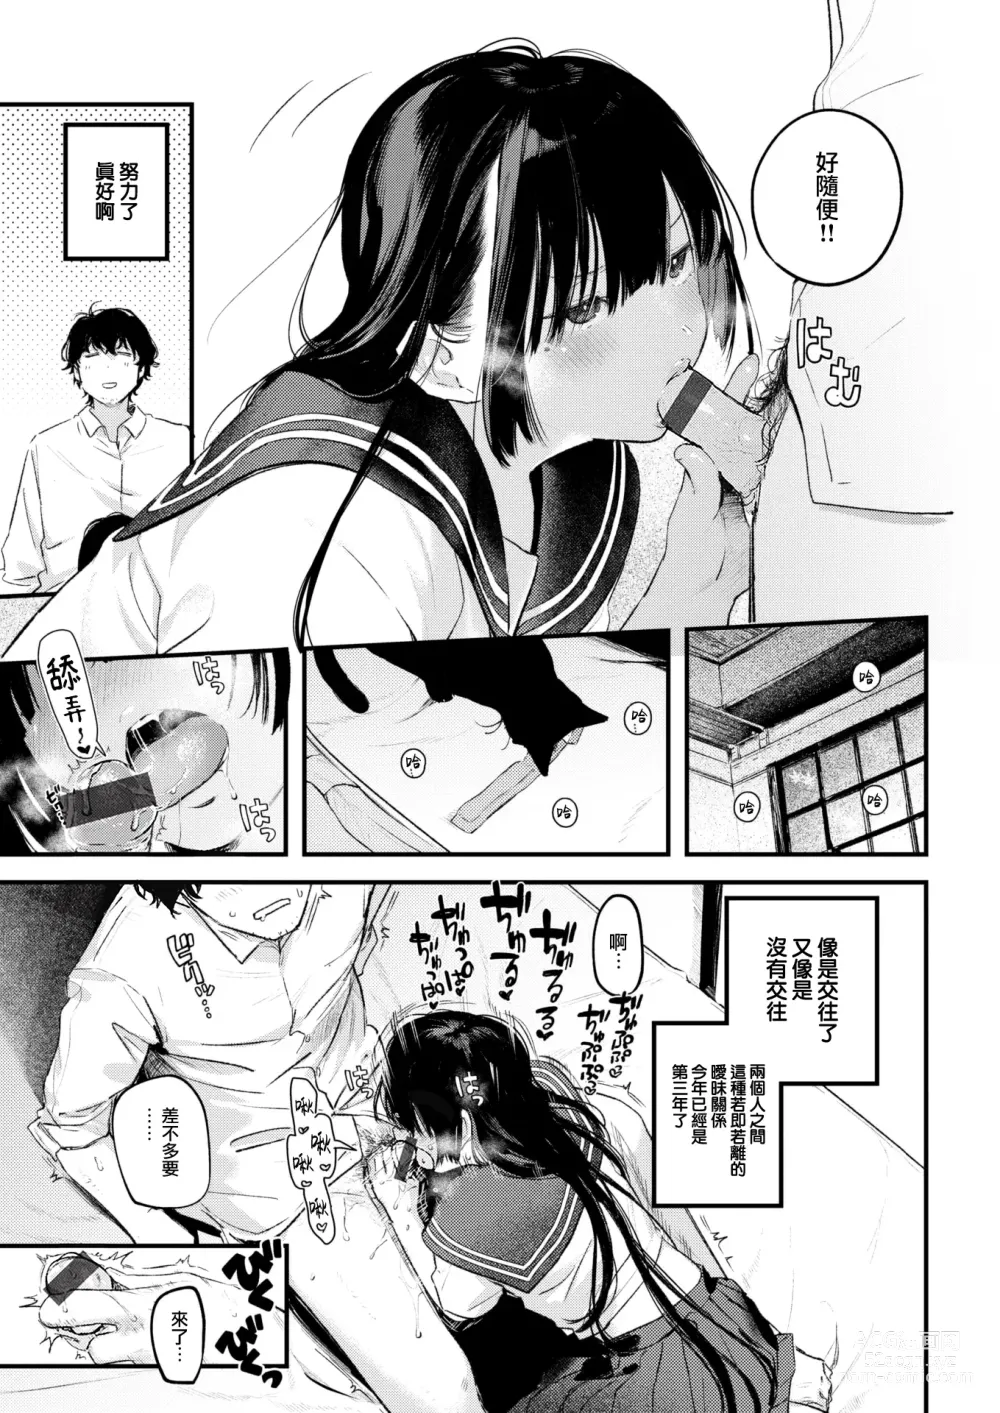 Page 12 of manga Koi no Mukidashi